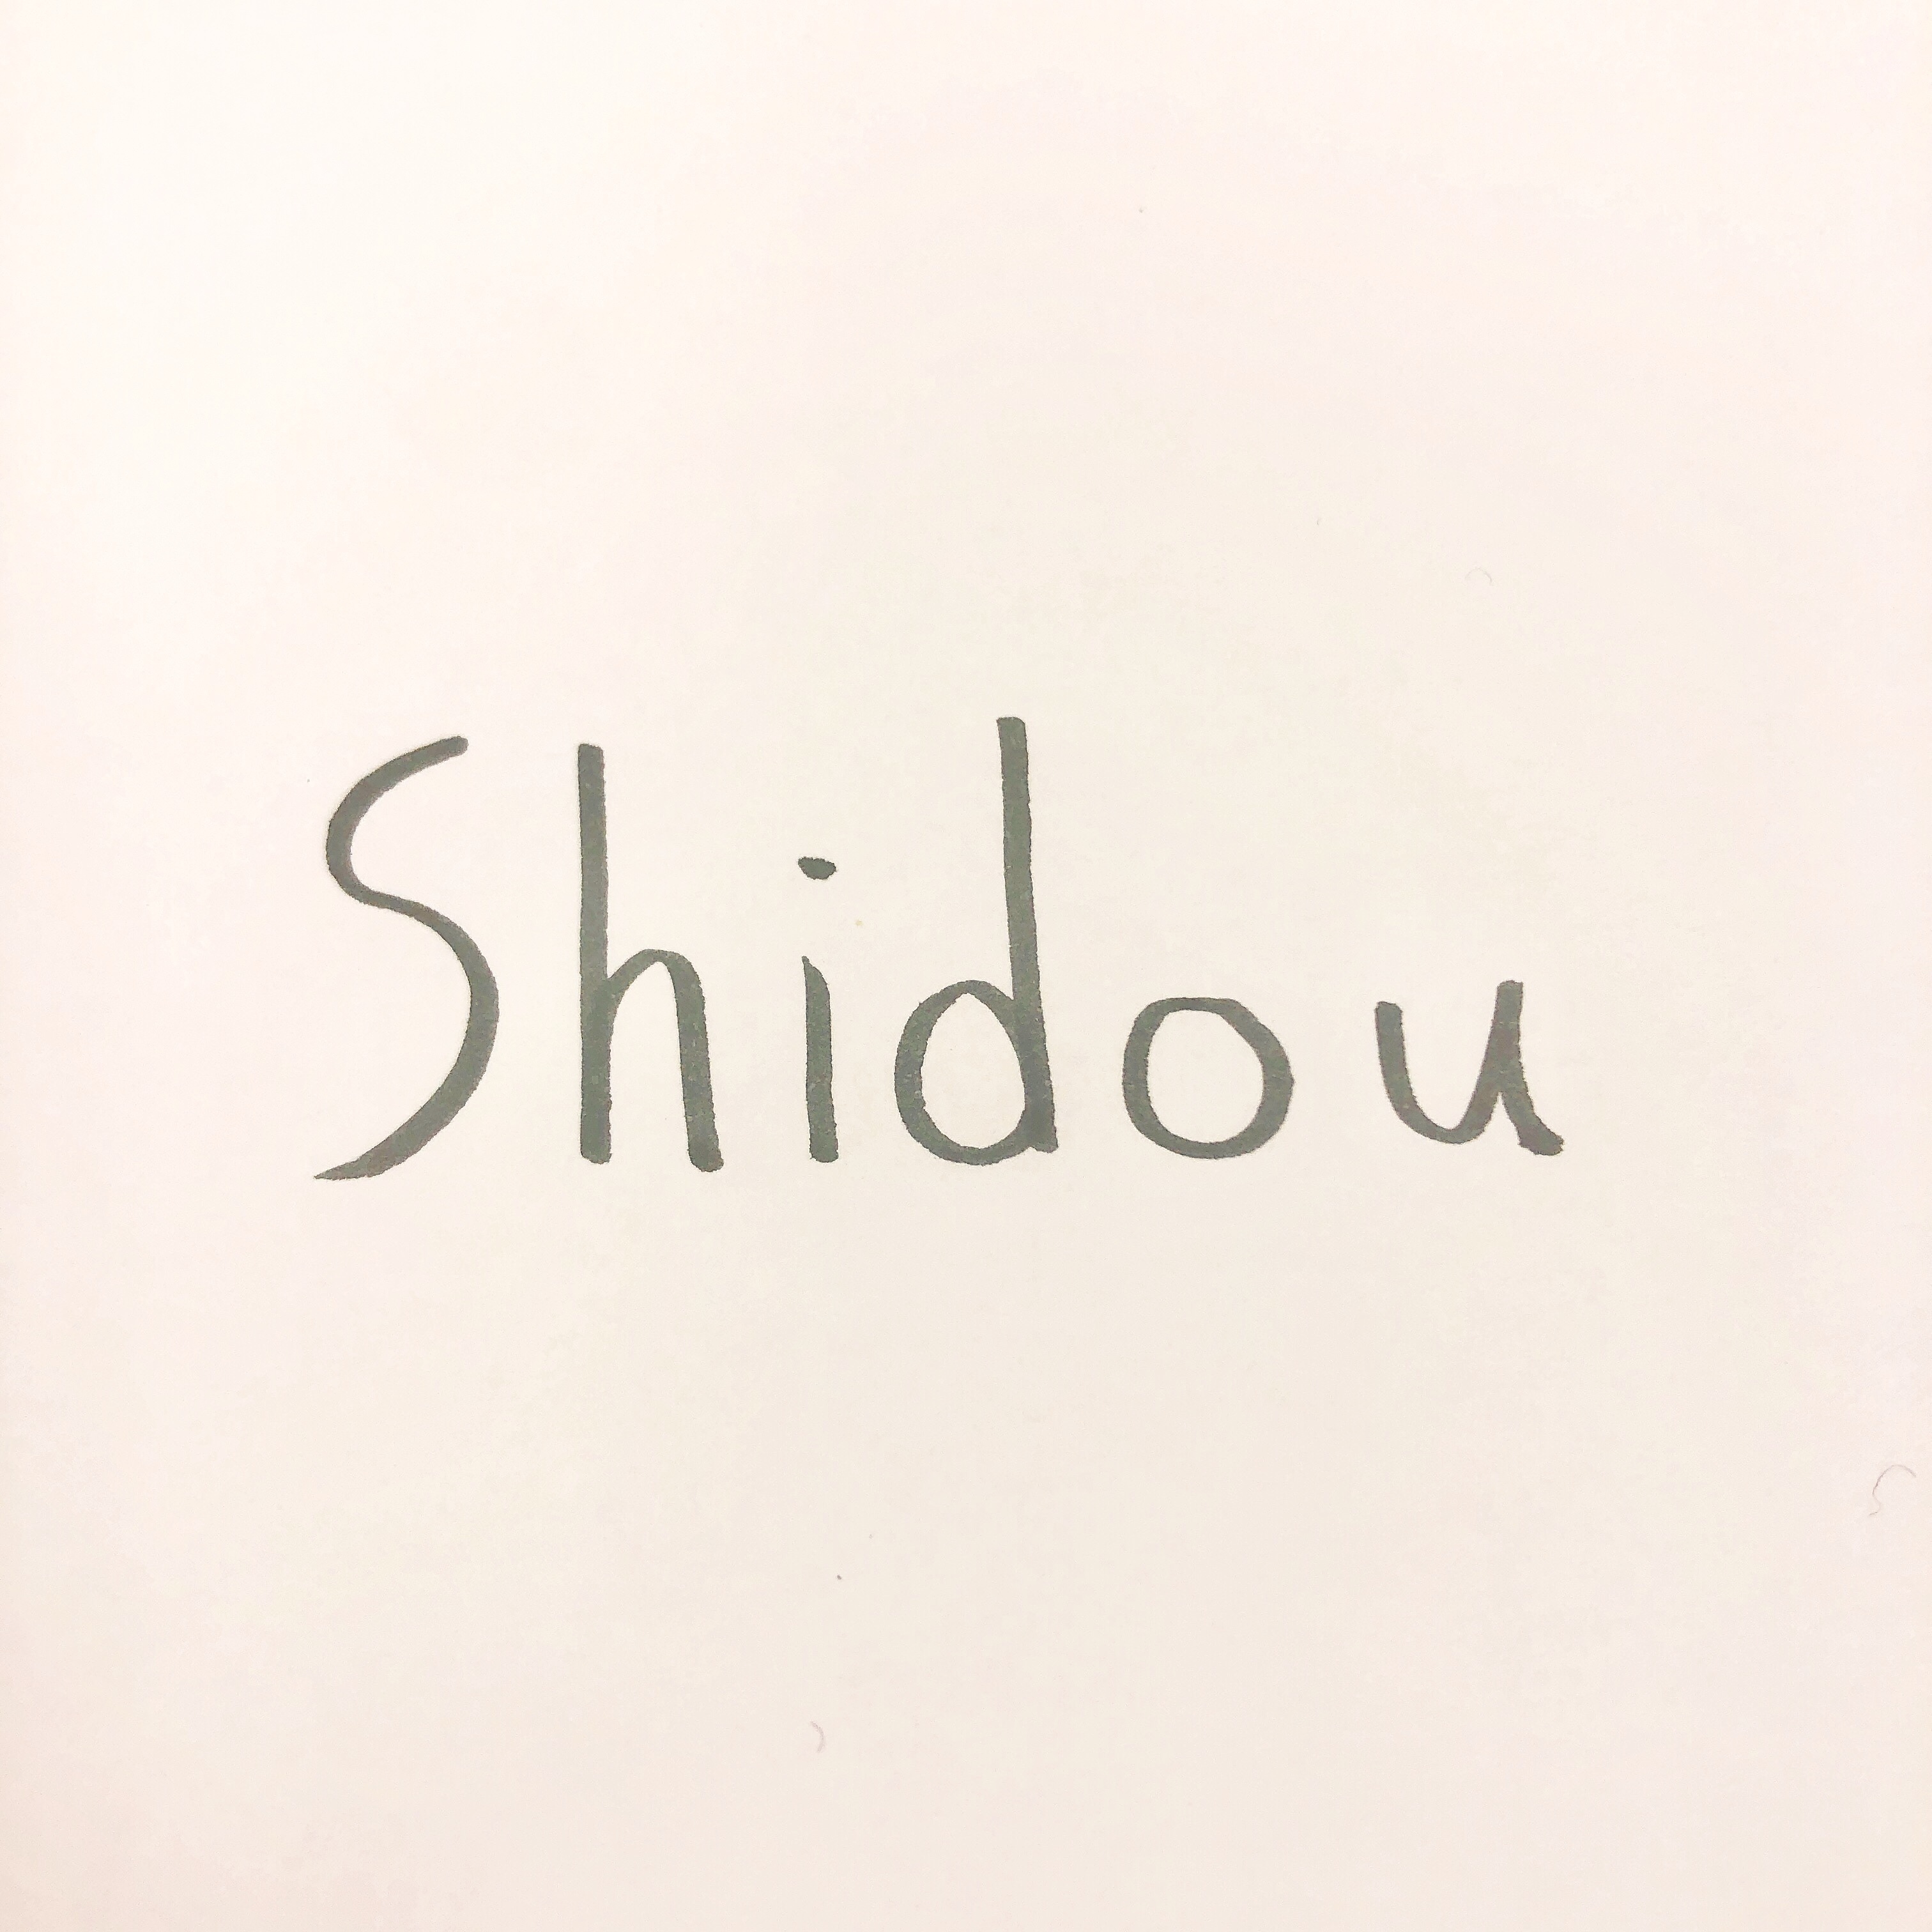 Shidou